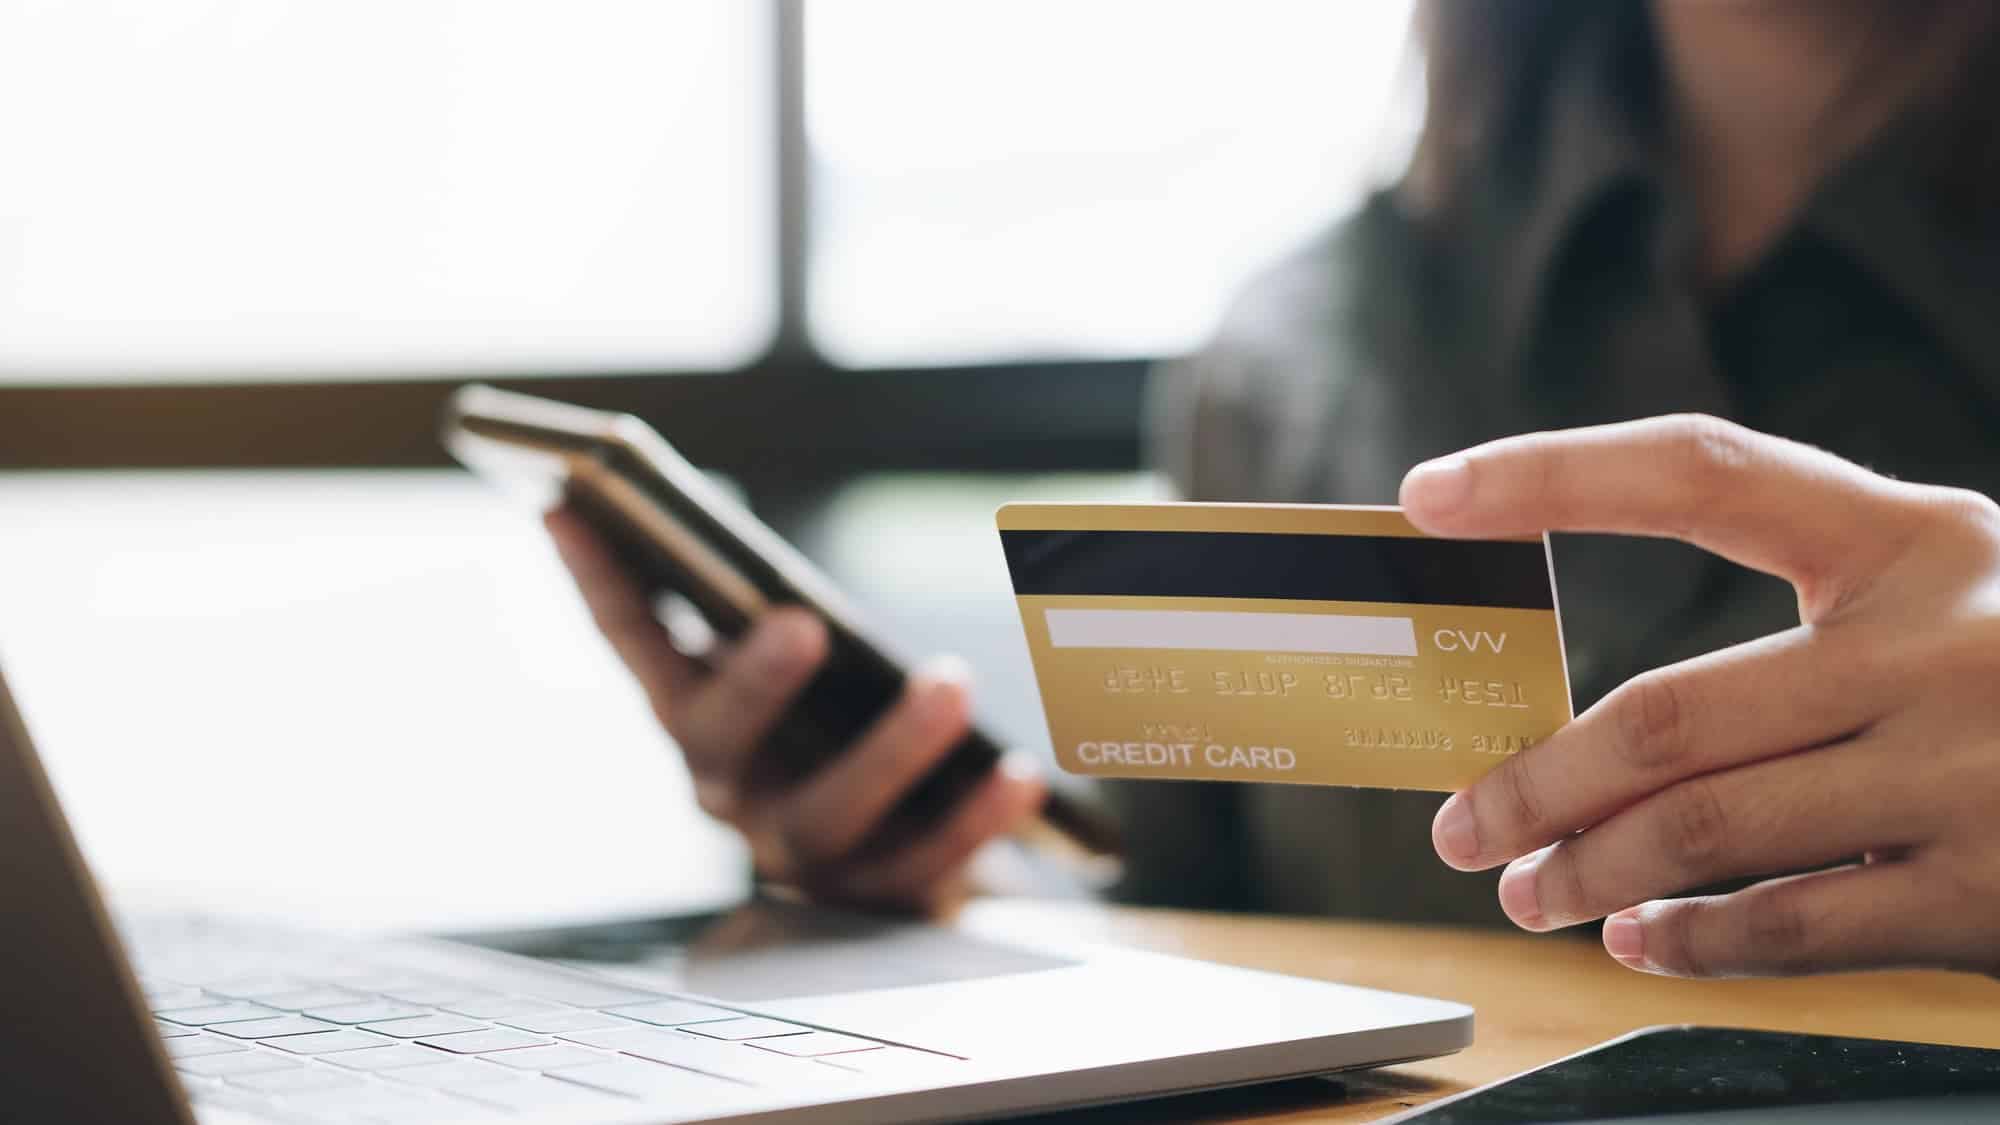 ¿Qué es el CVV o CVC de las tarjetas de crédito?